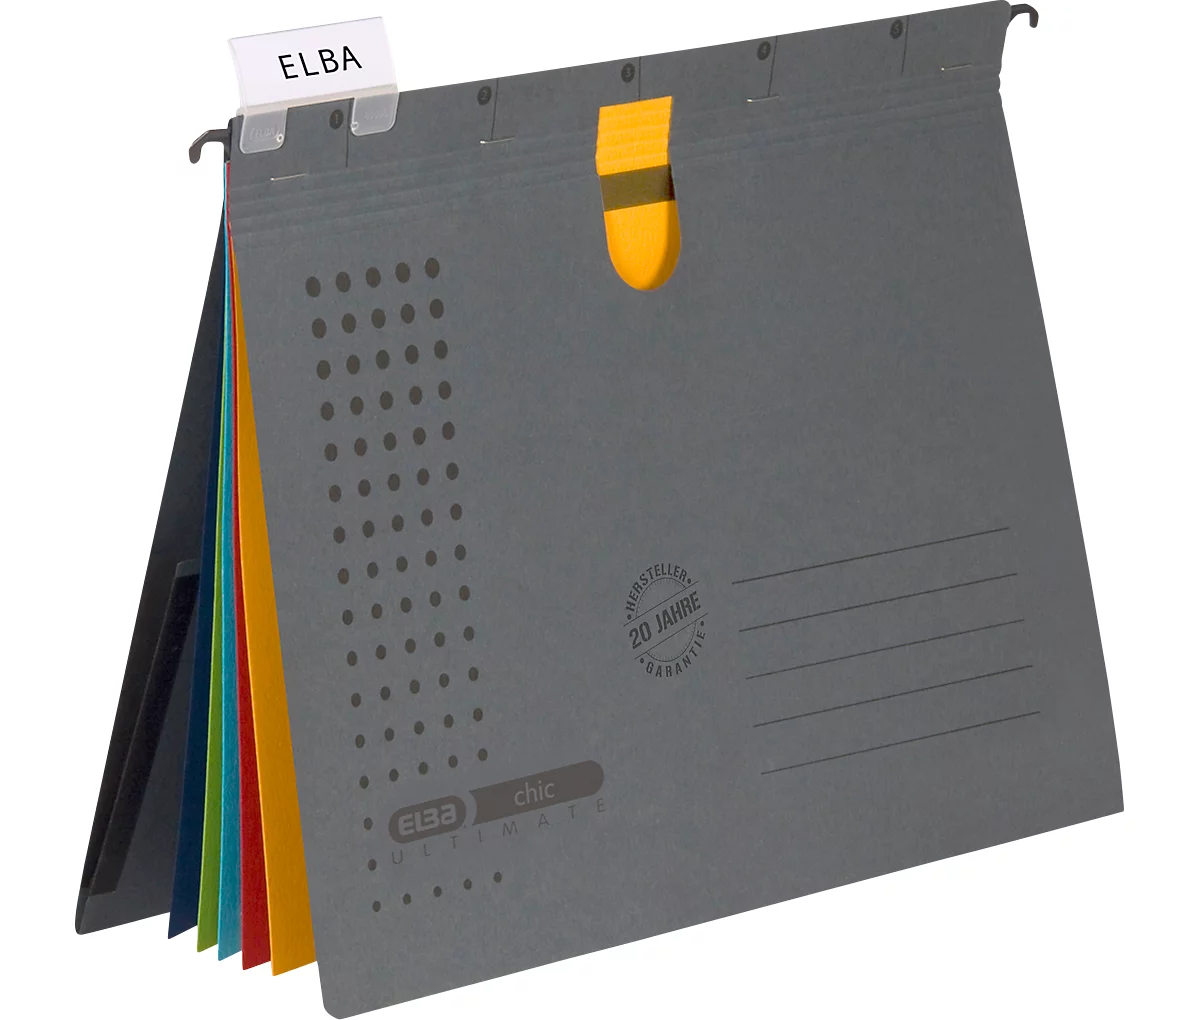 ELBA couverture pour dossier, A4, carton manille, jaune